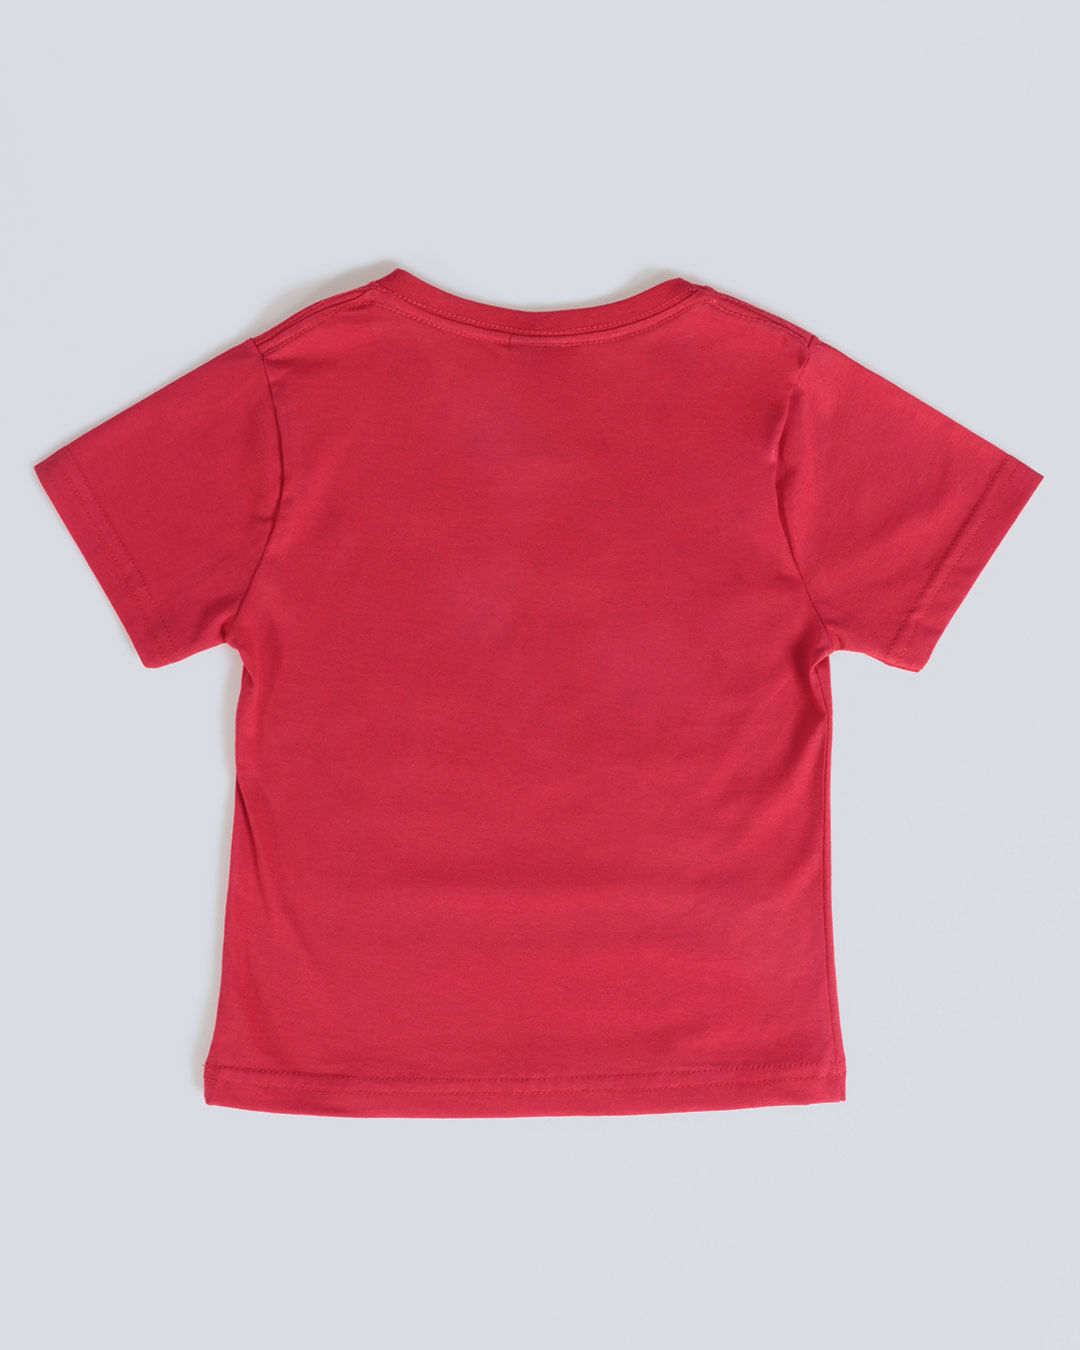 Camiseta-Bebe-Estampa-Carros-Disney-Vermelha